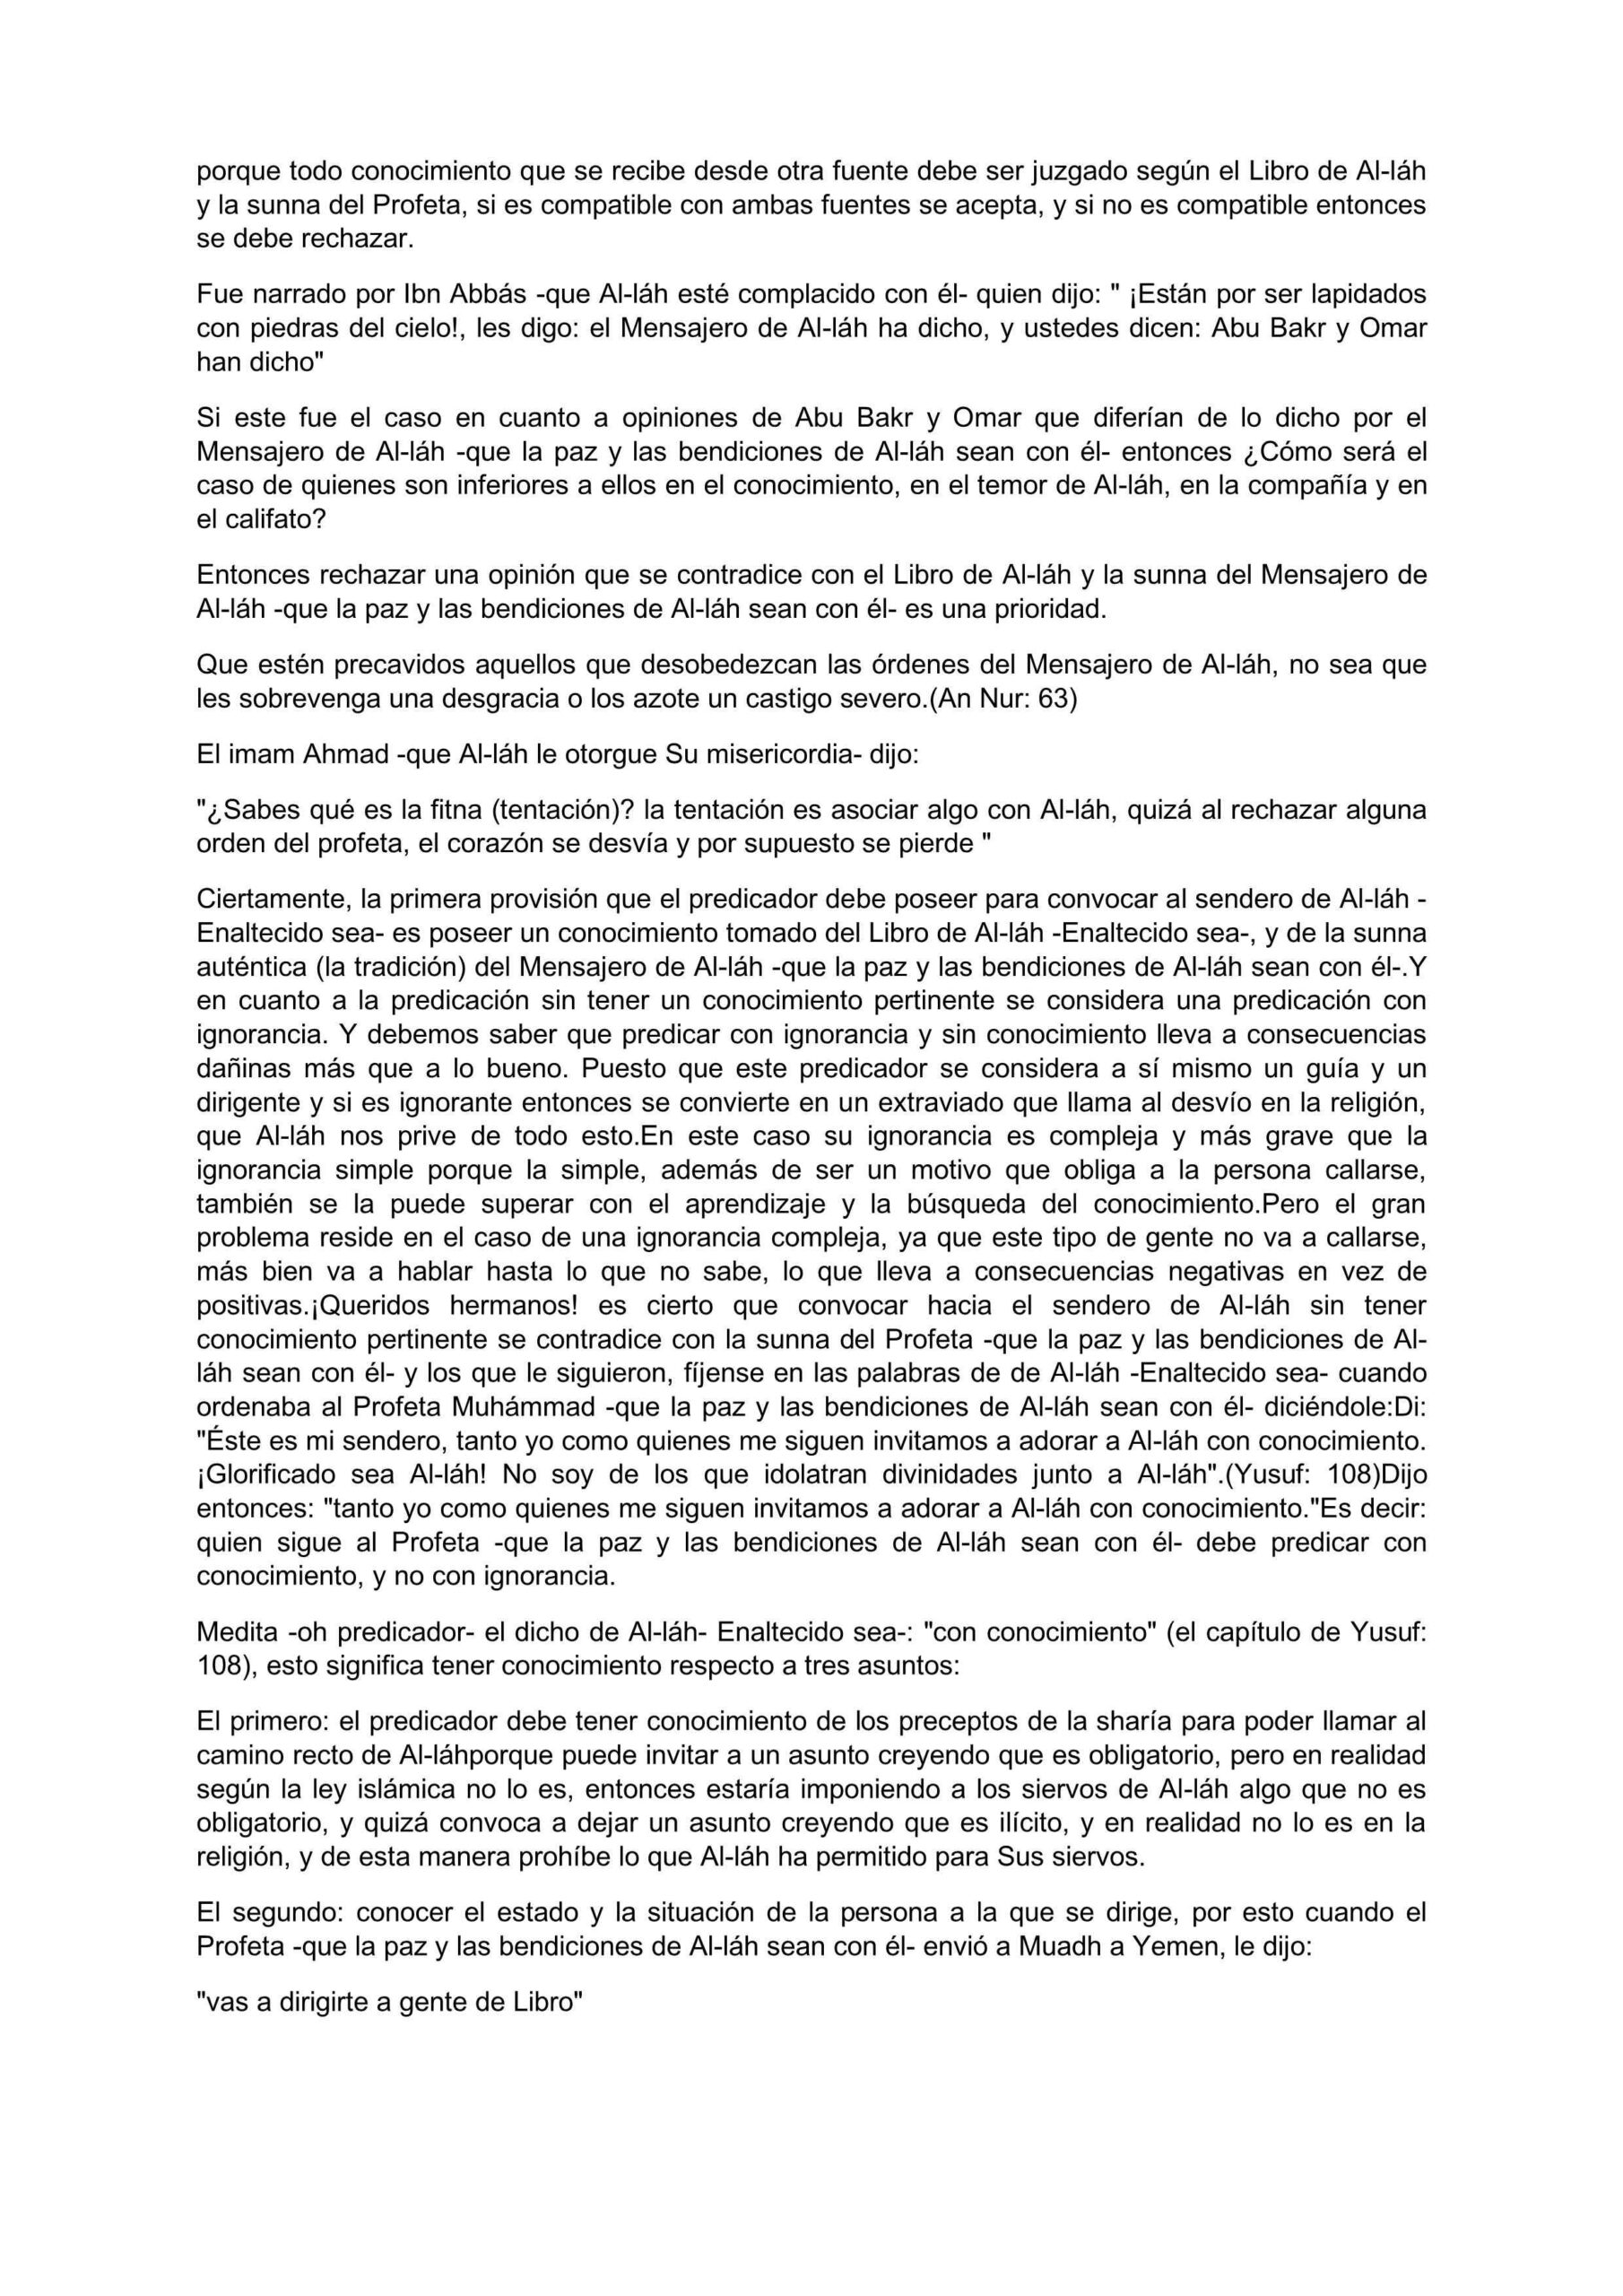 إسباني  زاد الداعية إلى الله  La provisión del predicador.pdf, 15-Sayfa 